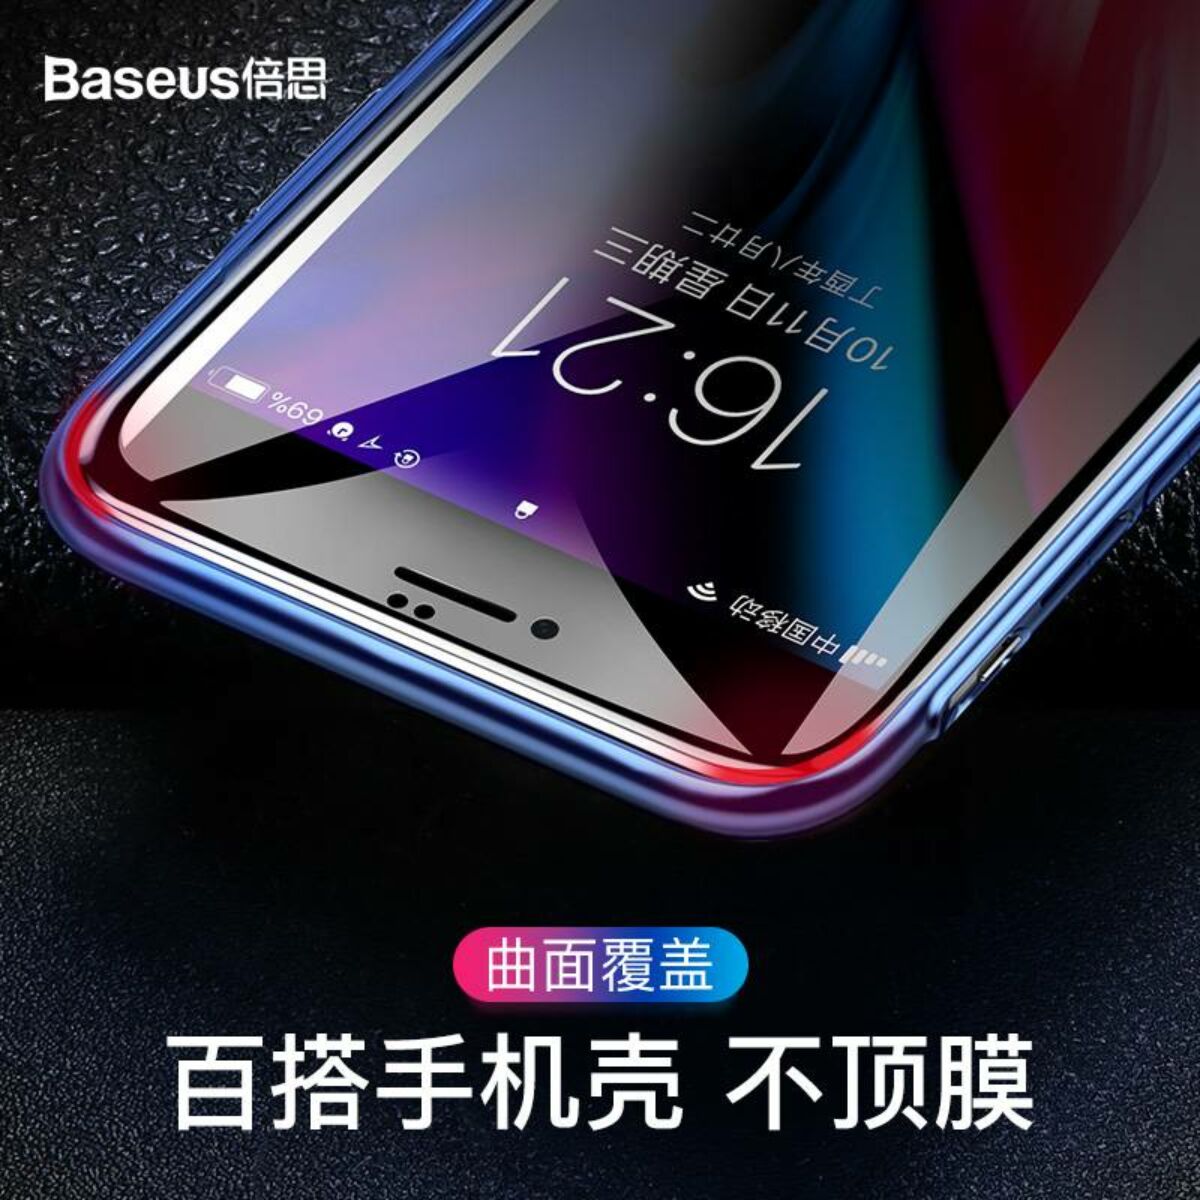 Baseus iPhone 8/7 Plus 0.23 mm, teljes felületre edzett üveg, törésálló élek, betekintés védelemmel, fehér (SGAPIPH8P-ATG02